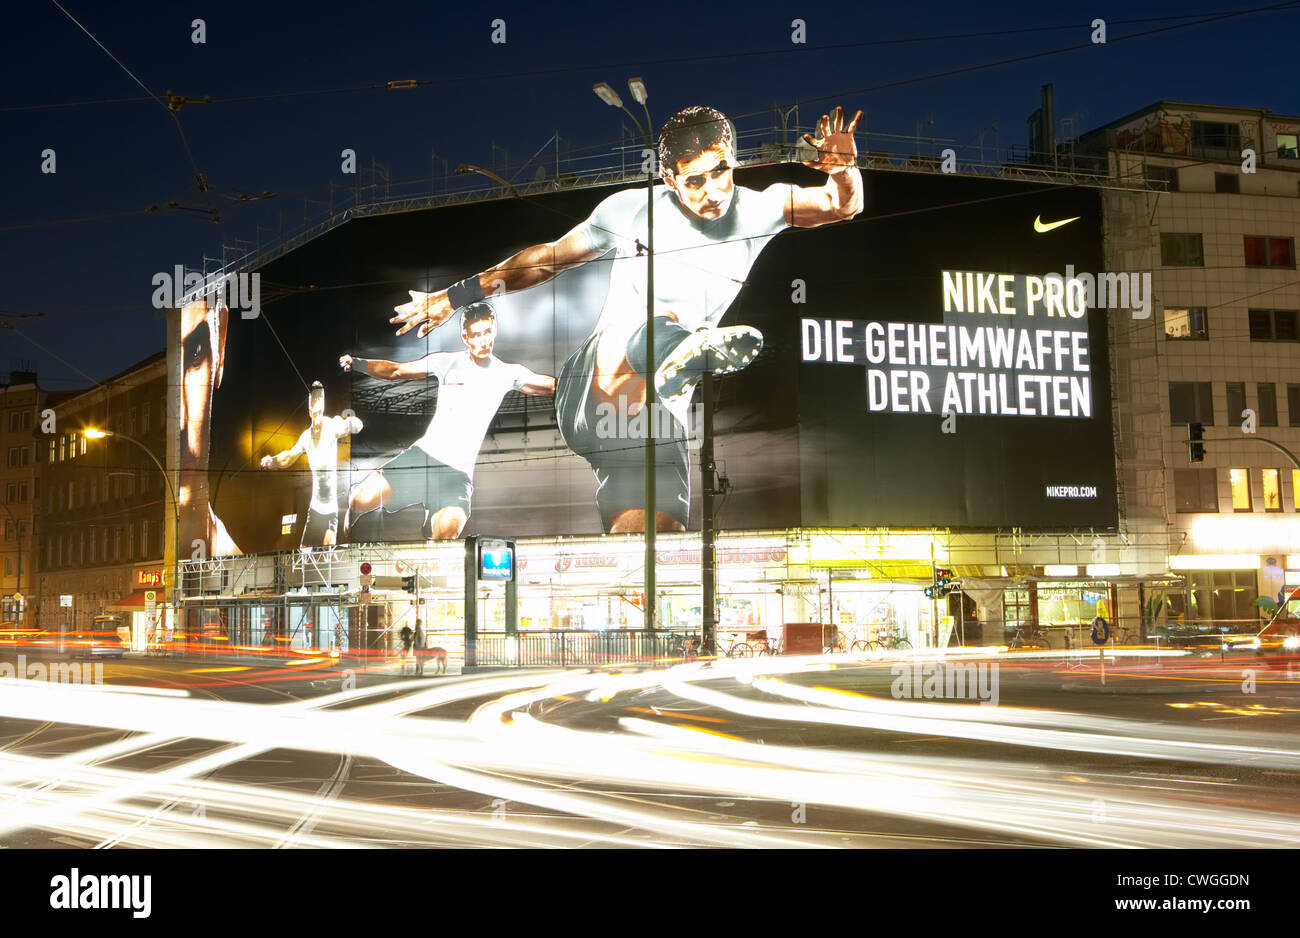 Nike billboard immagini e fotografie stock ad alta risoluzione - Alamy